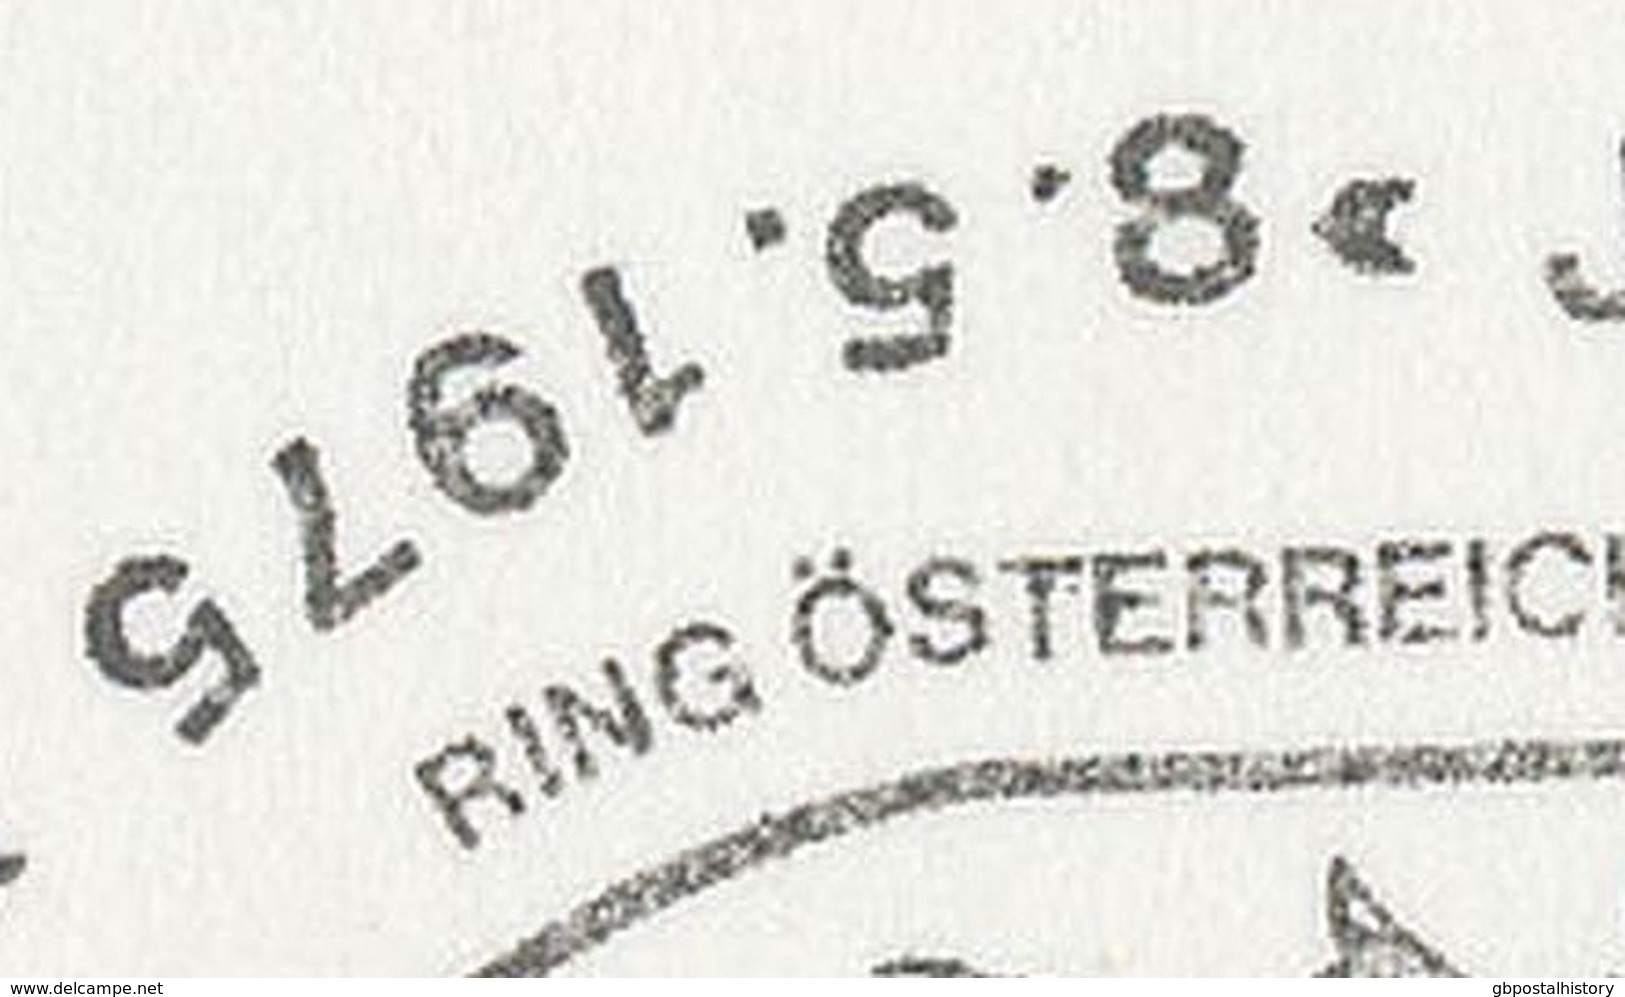 ÖSTERREICH 1975 4840 VÖCKLABRUCK Jugend-Briefmarken-Ausstellung - 30 Jahre 2.Republik Österreich 1945-1975 STEMPELFEHLER - Macchine Per Obliterare (EMA)